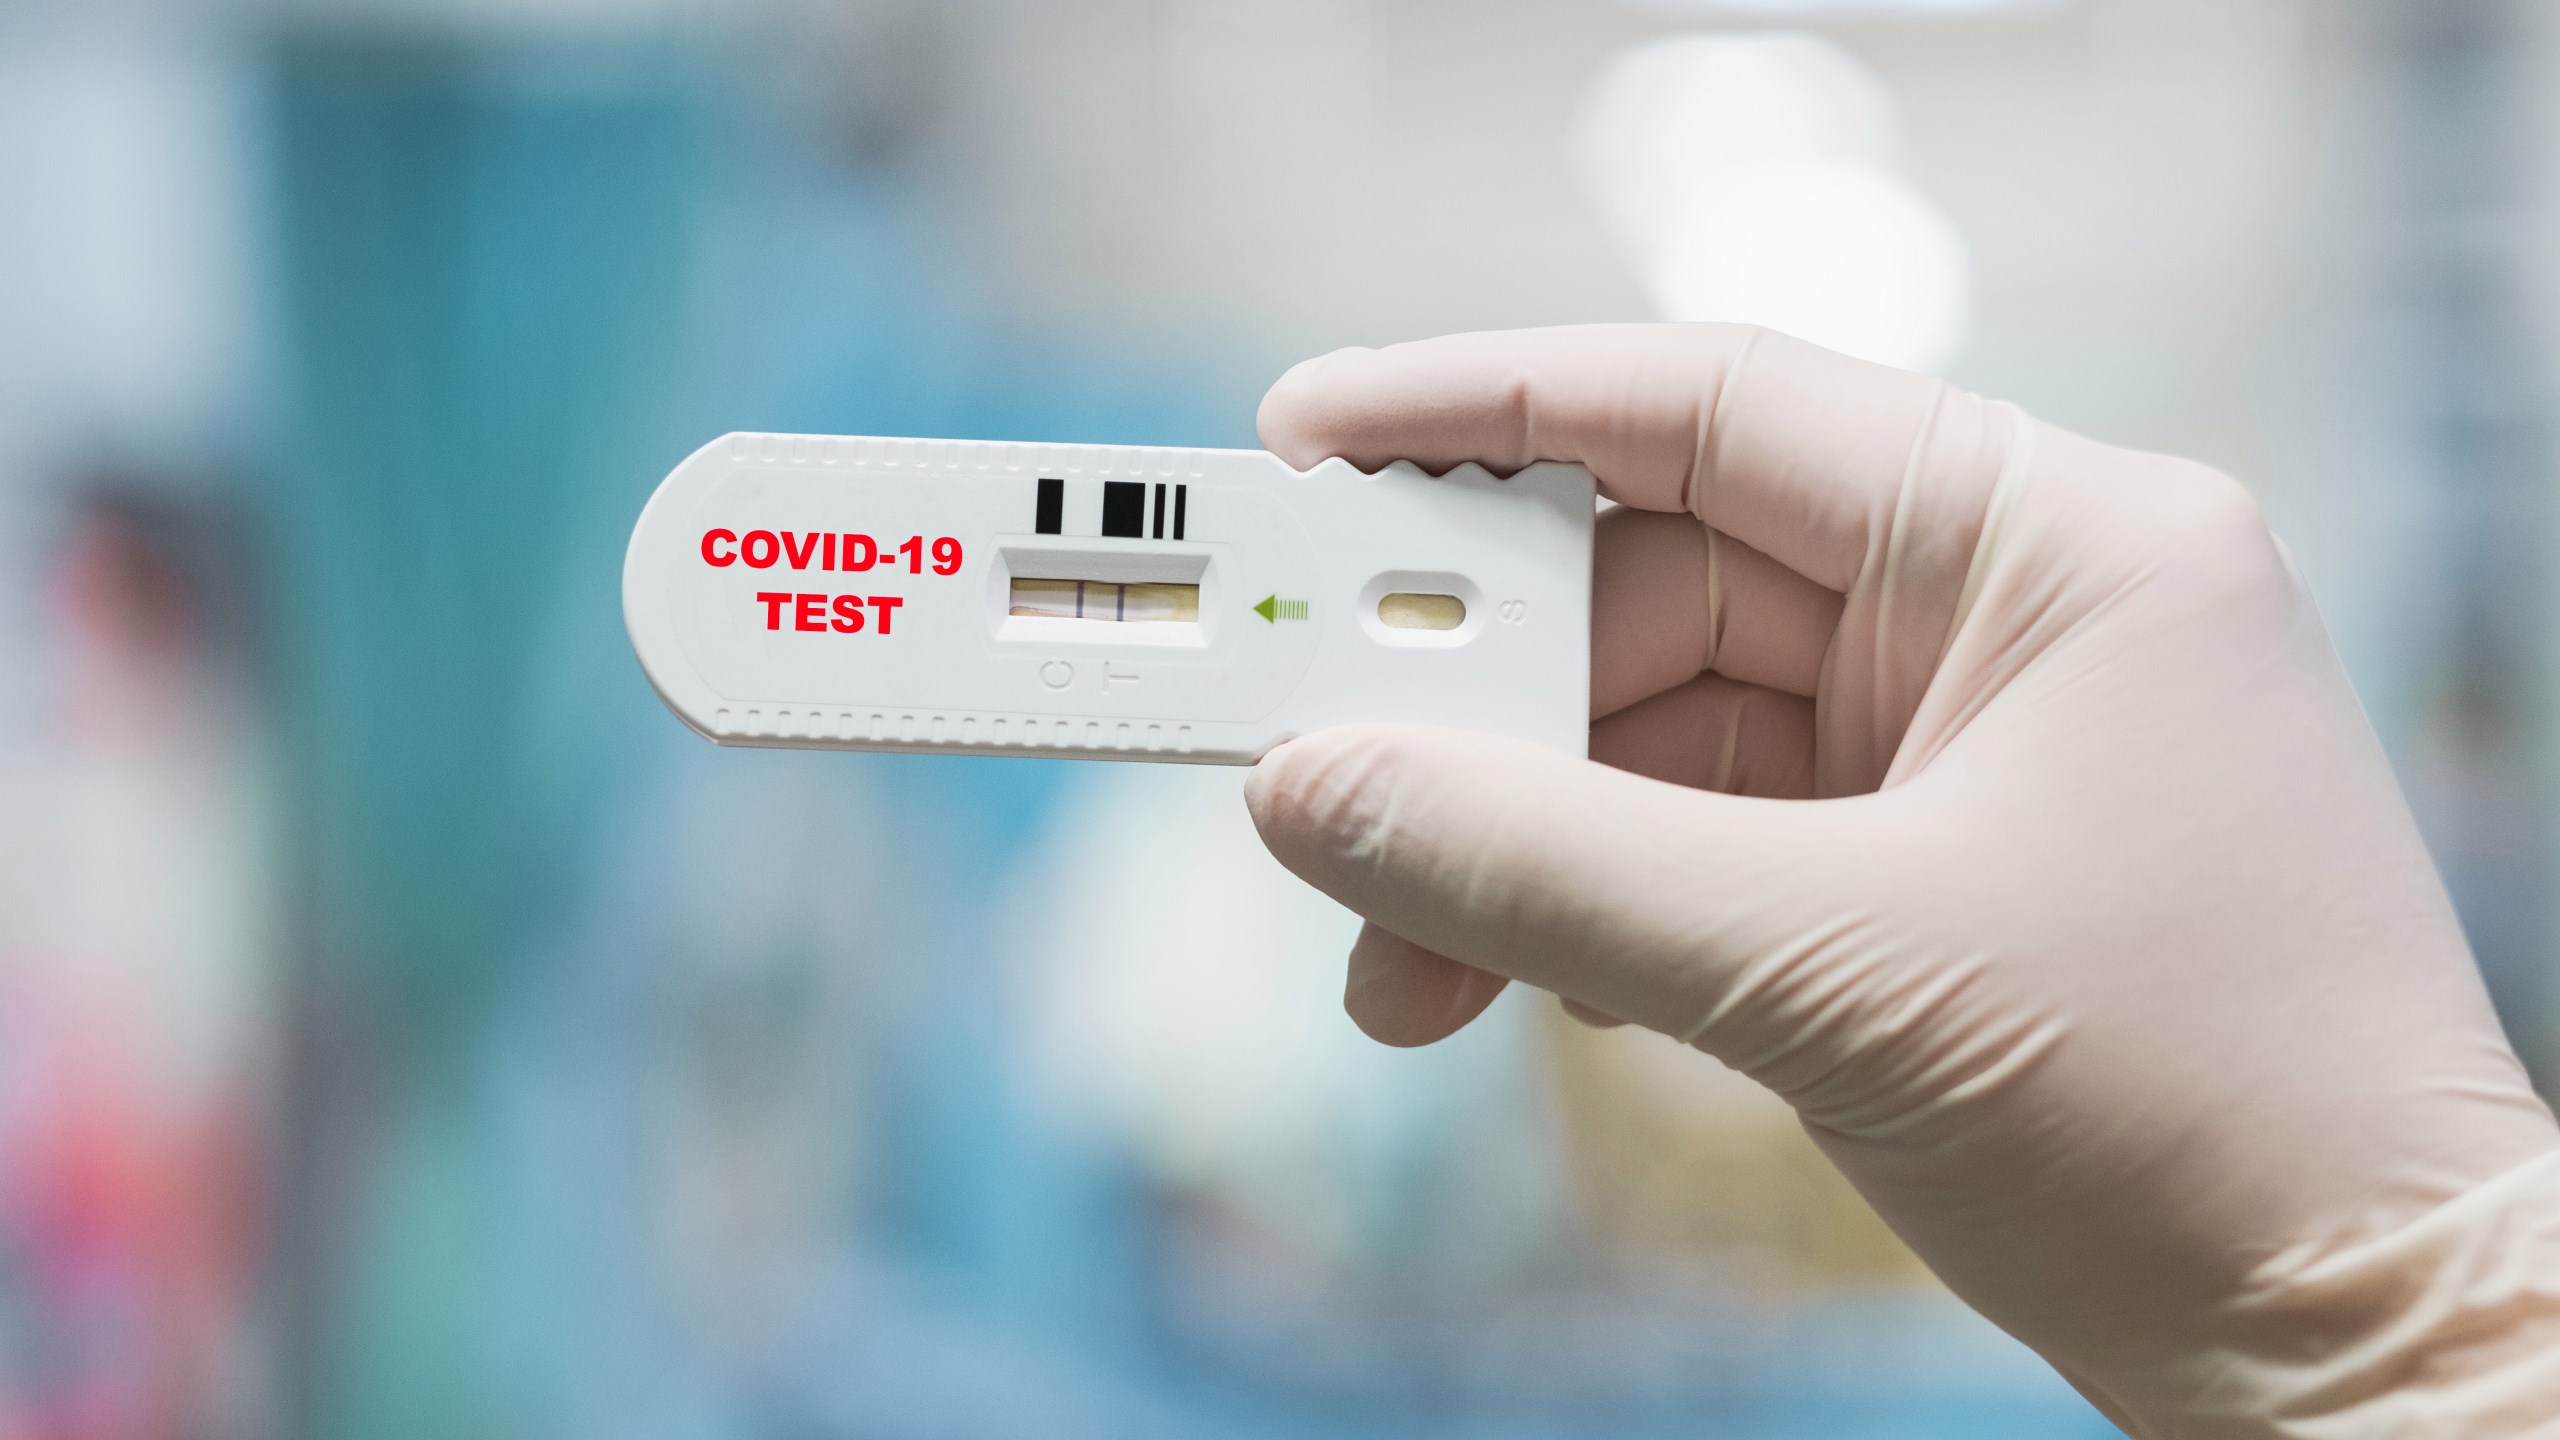 Koronavirüs test kiti satışı ve reklamlarına erişim engeli getirildi